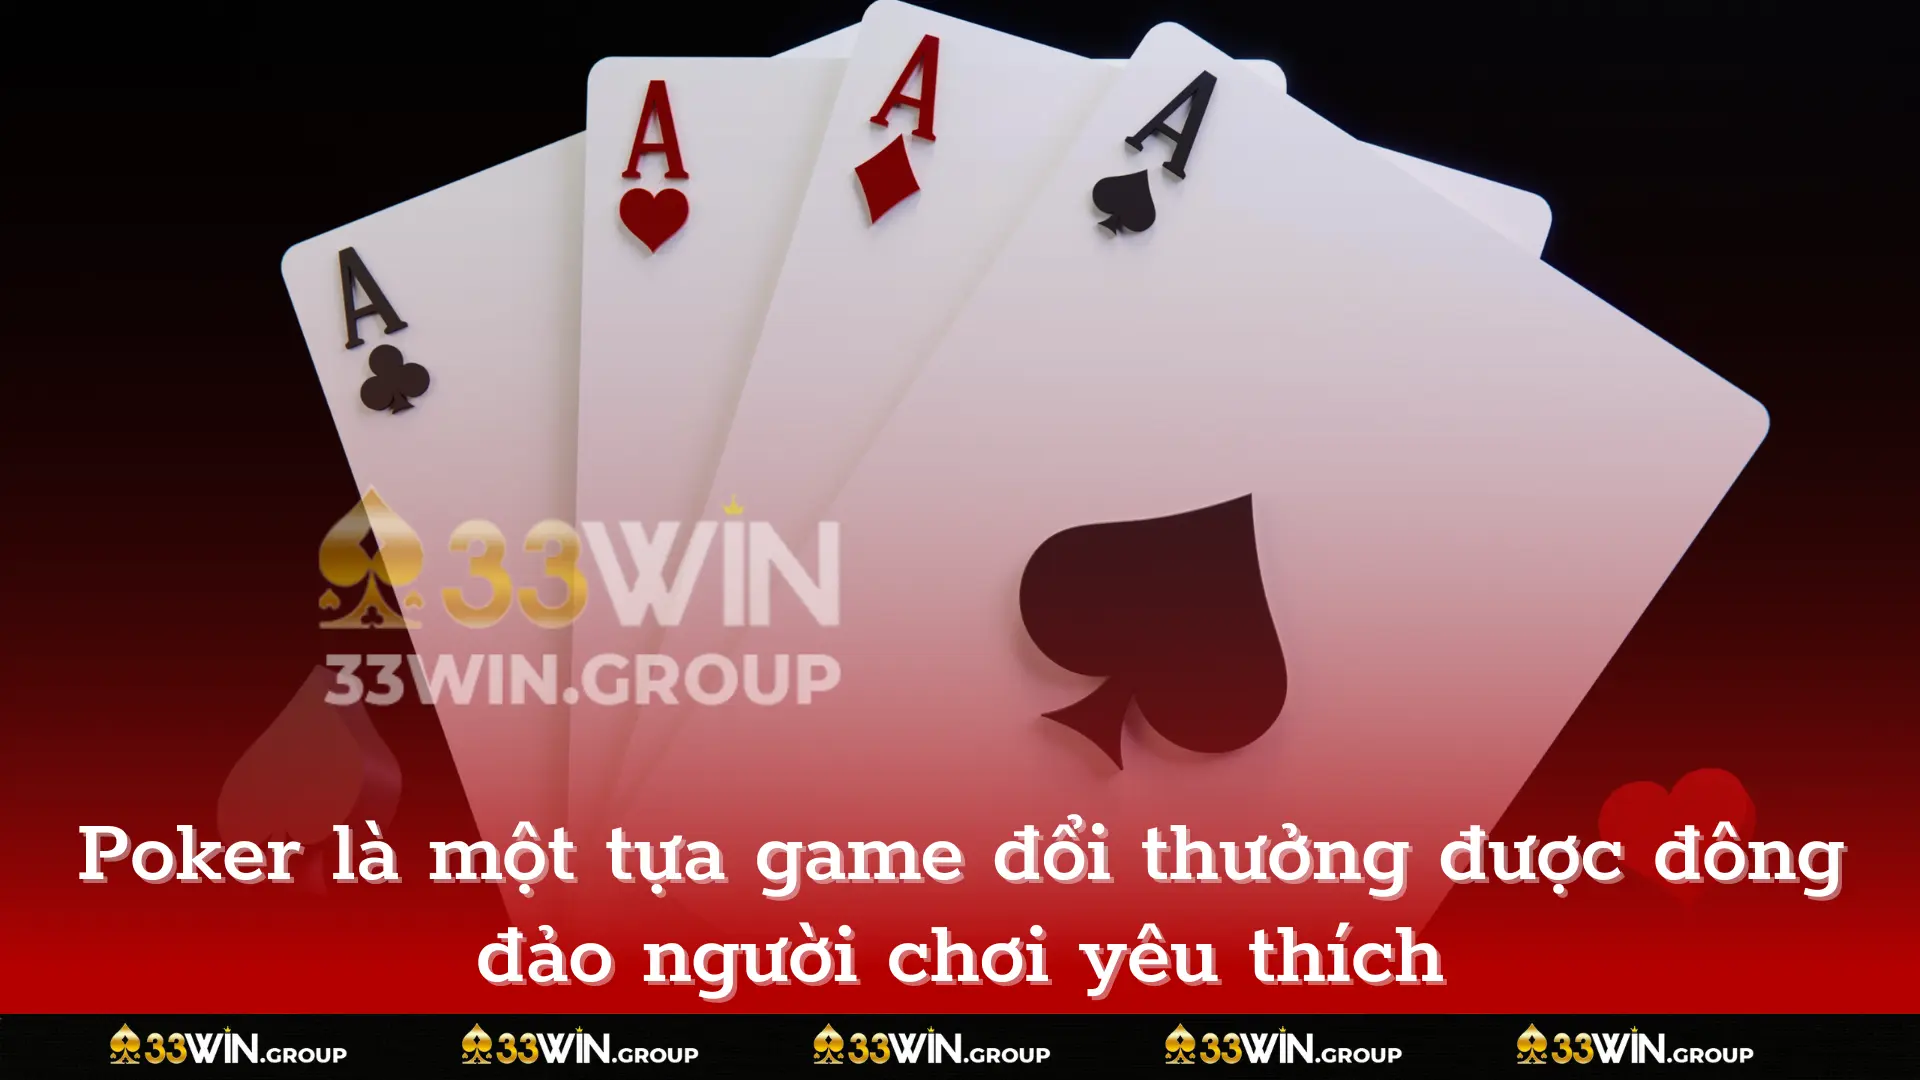 Poker là một tựa game đổi thưởng được đông đảo người chơi yêu thích